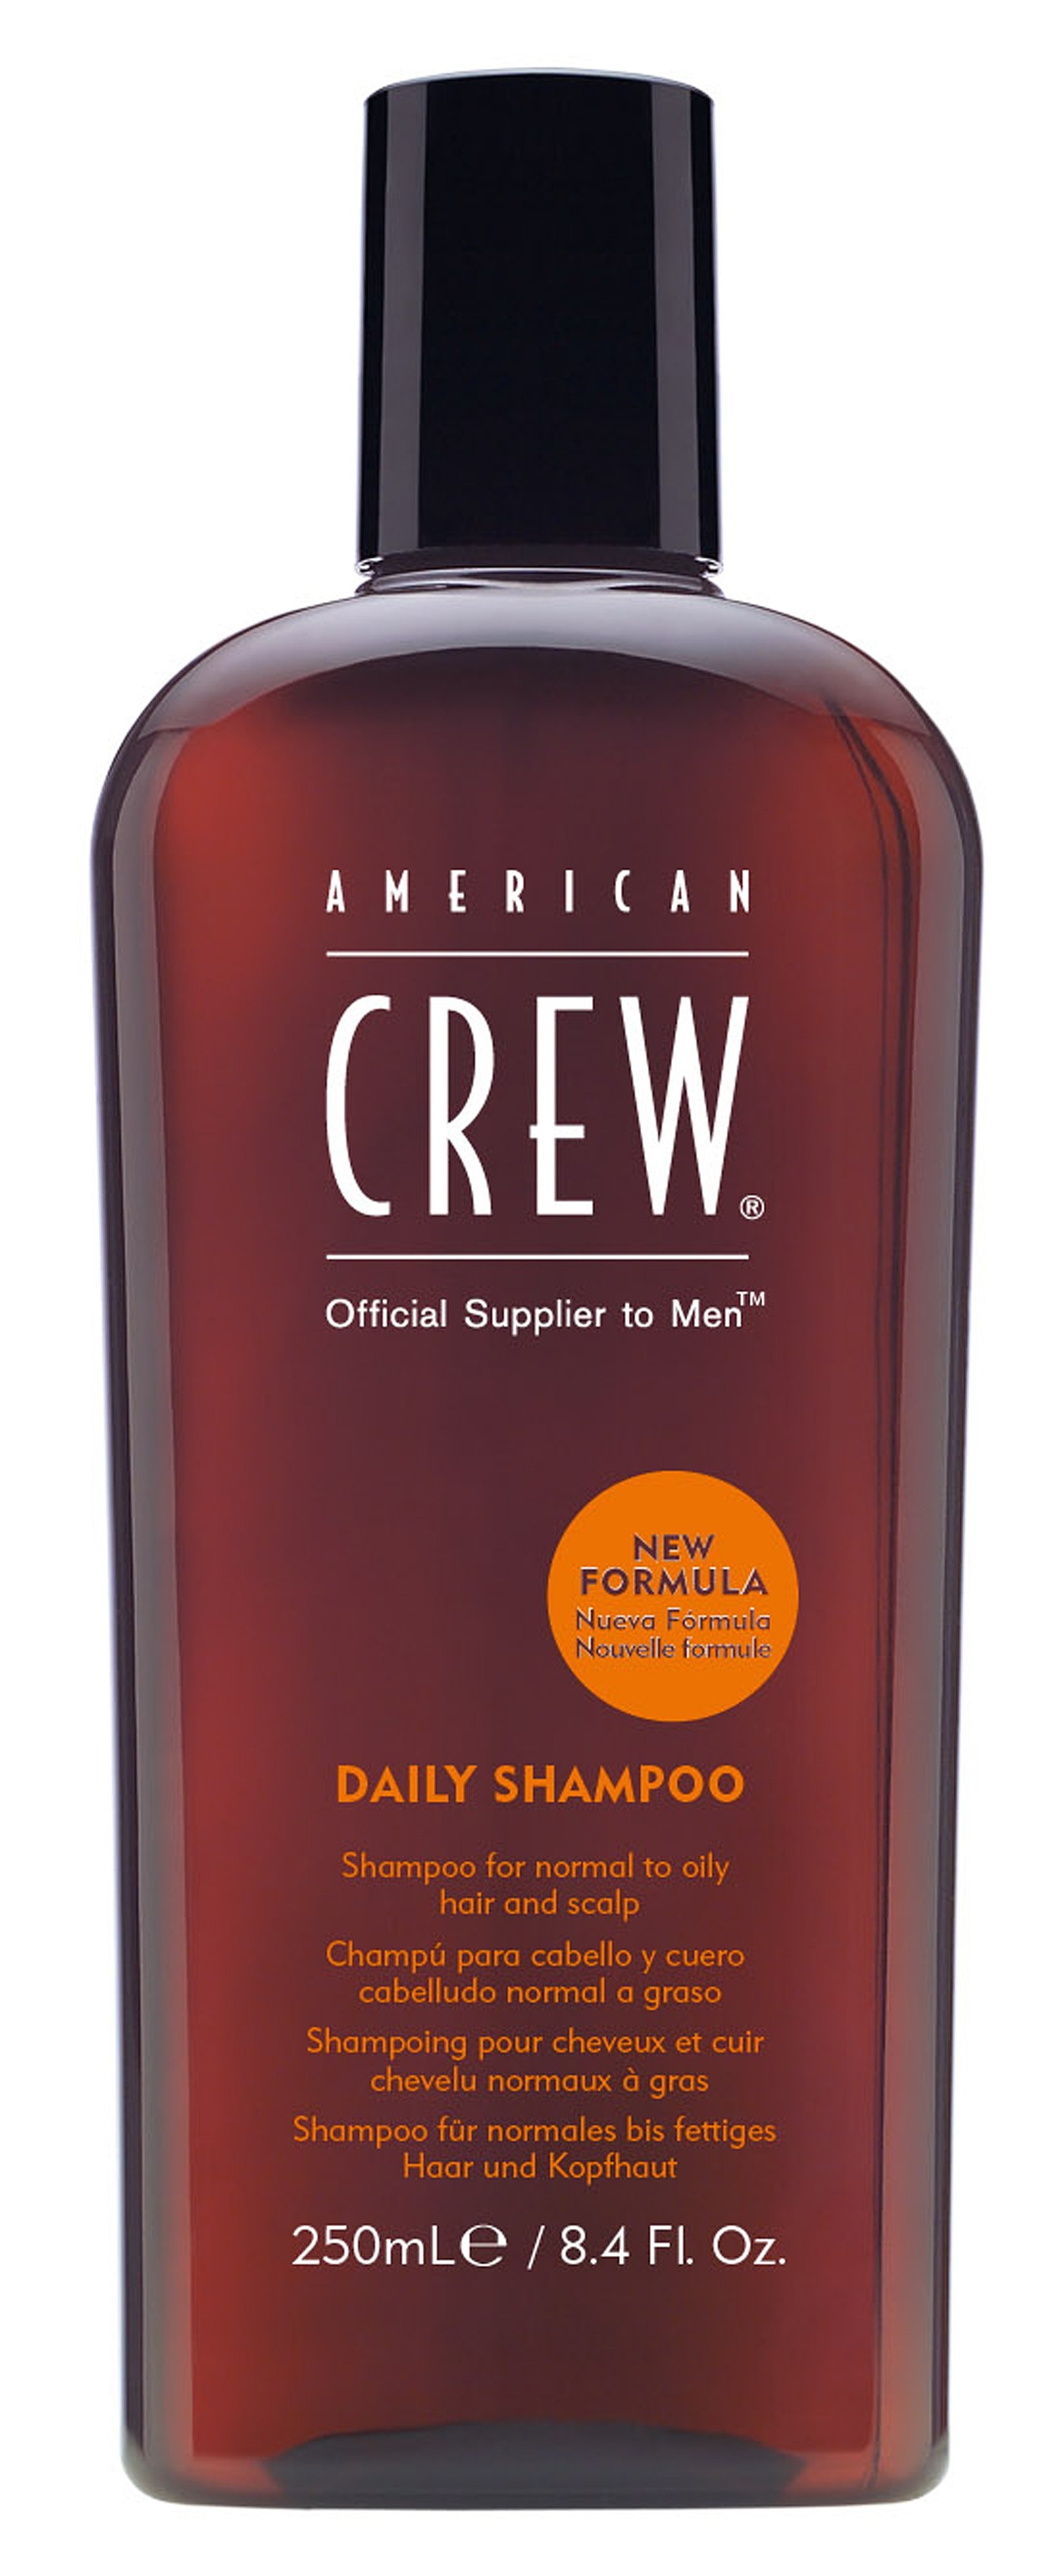 Мужские шампуни:  AMERICAN CREW -  Шампунь для нормальных и склонных к жирности волос и кожи головы Daily Shampoo (250 мл)